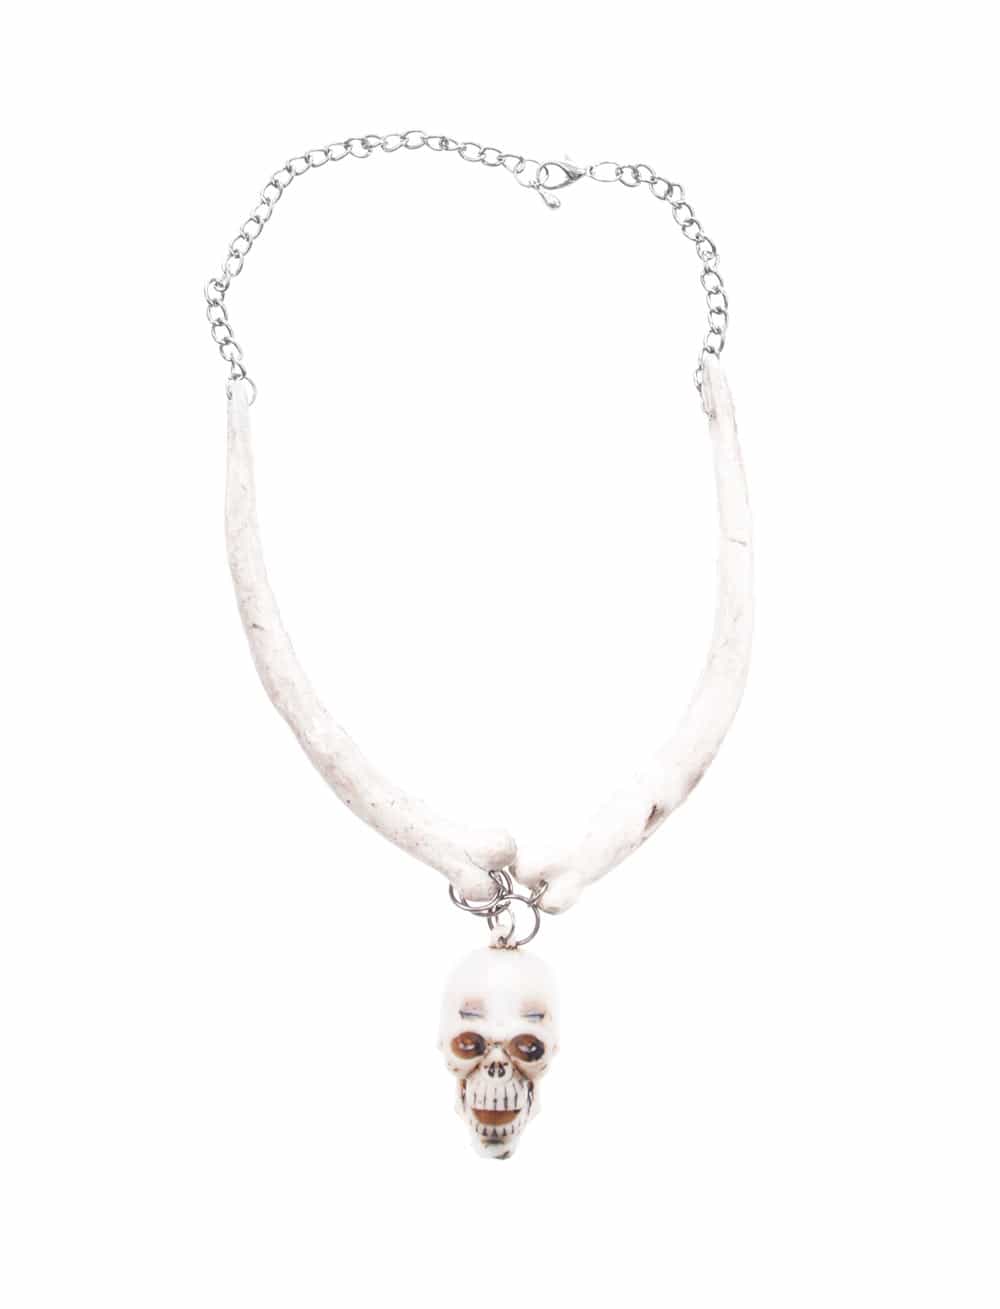 Halskette Totenkopf Häuptling HIER kaufen » Deiters